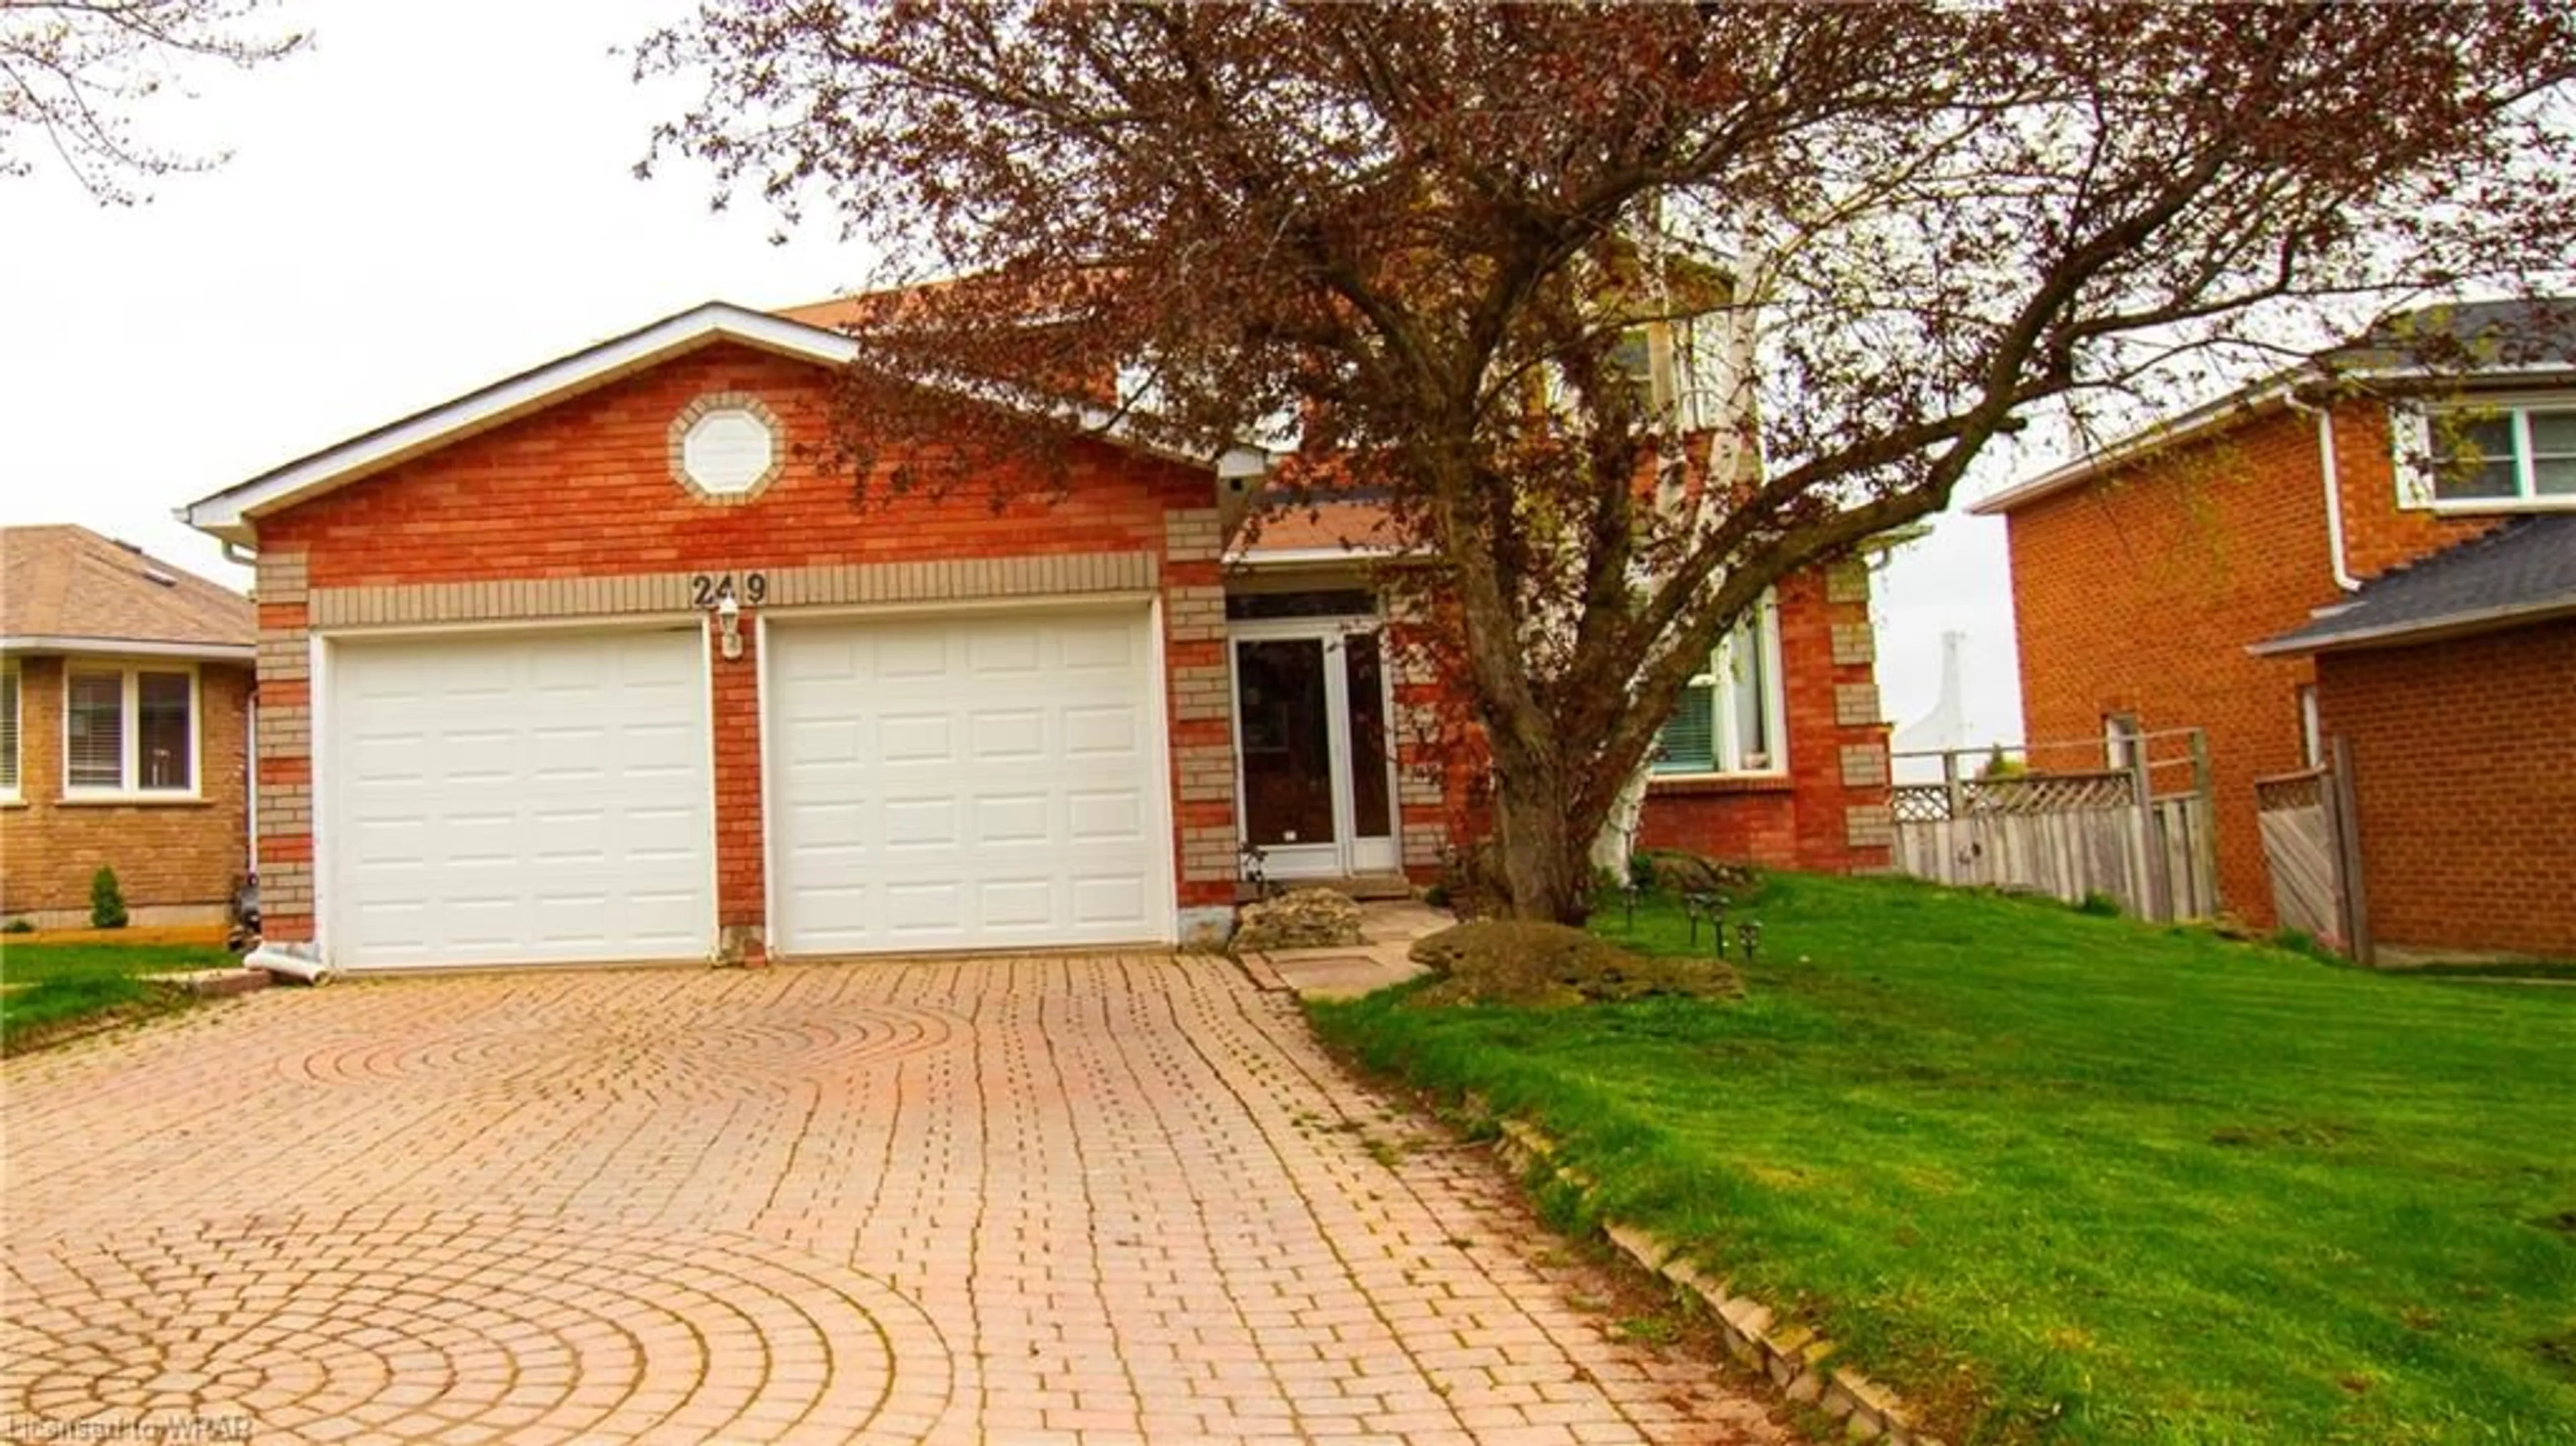 Home with brick exterior material for 249 Edenwood Cres, Orangeville Ontario L9W 4M7